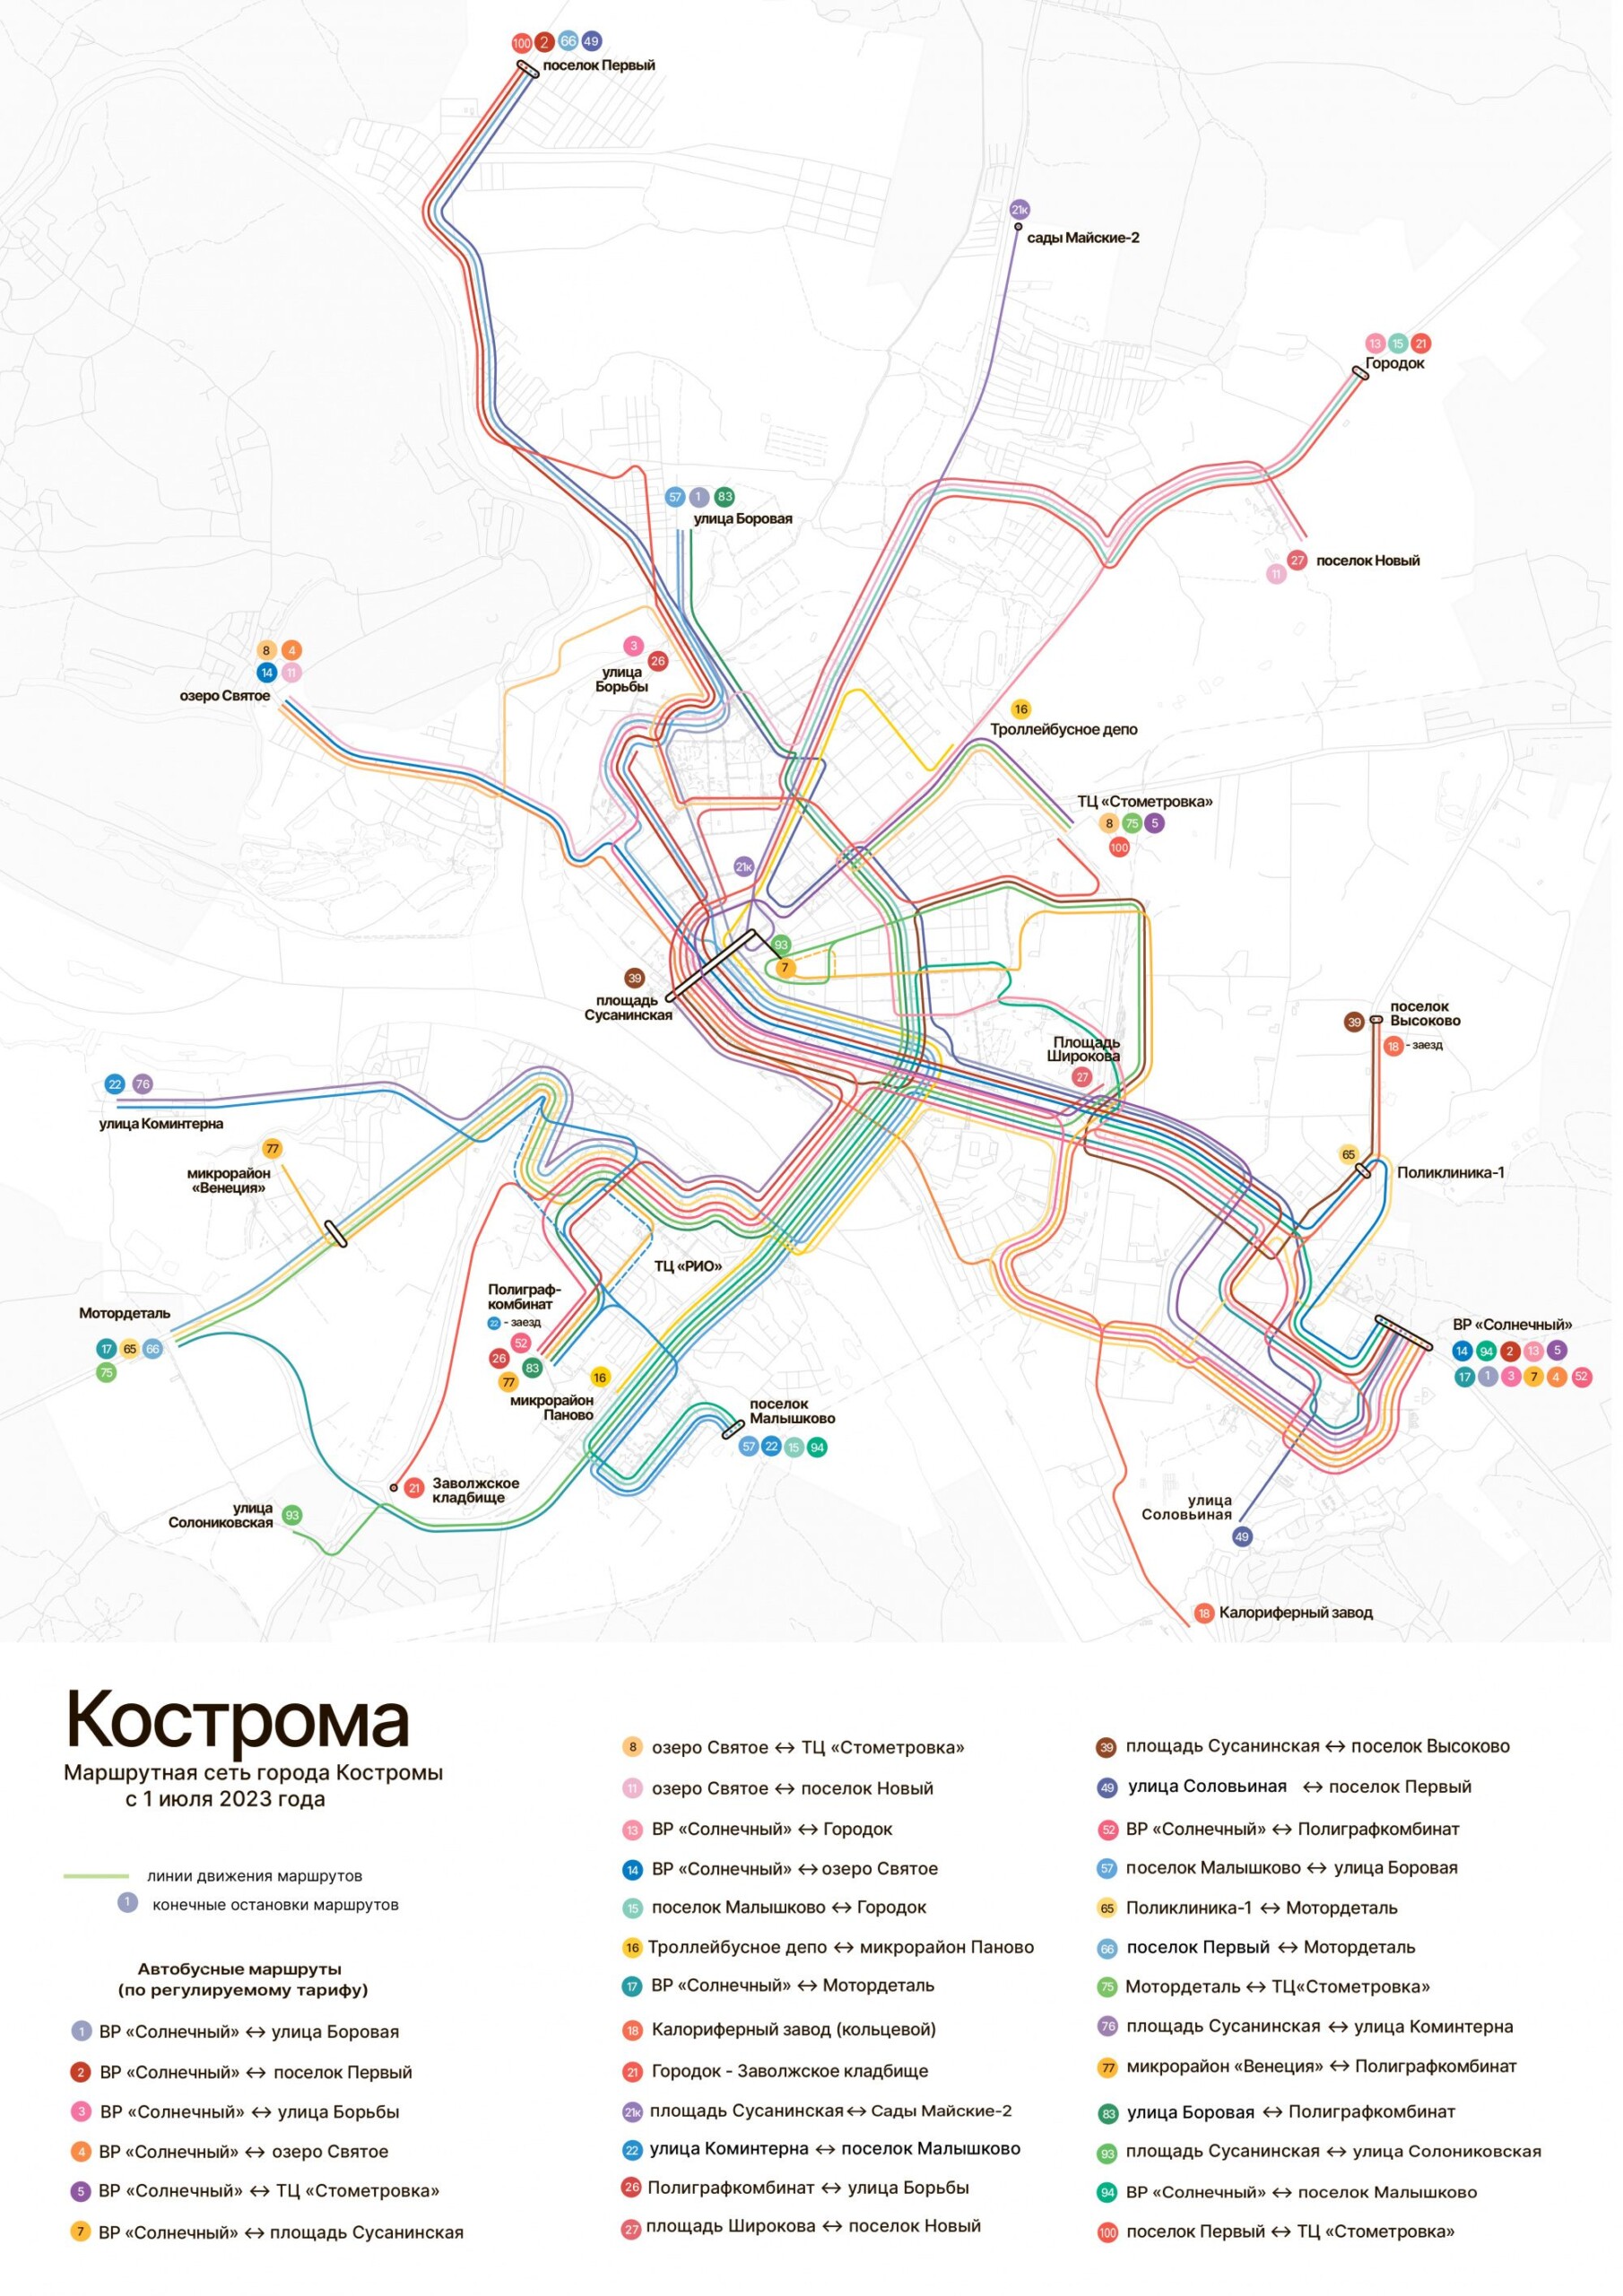 Новую схему общественного транспорта обнародовали в Костроме